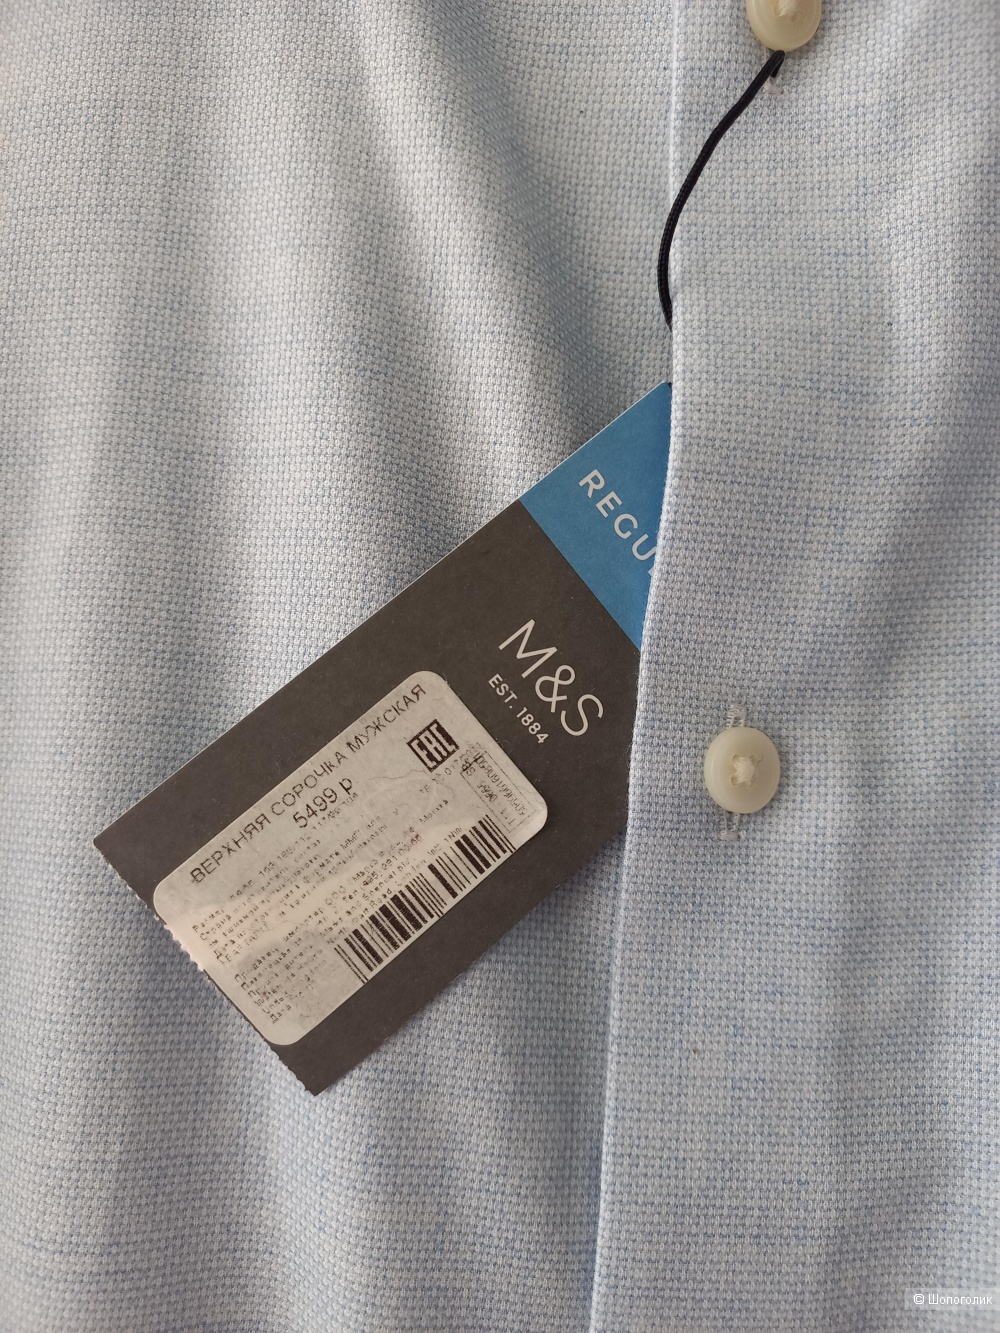 Мужская рубашка Marks & Spencer 52р.